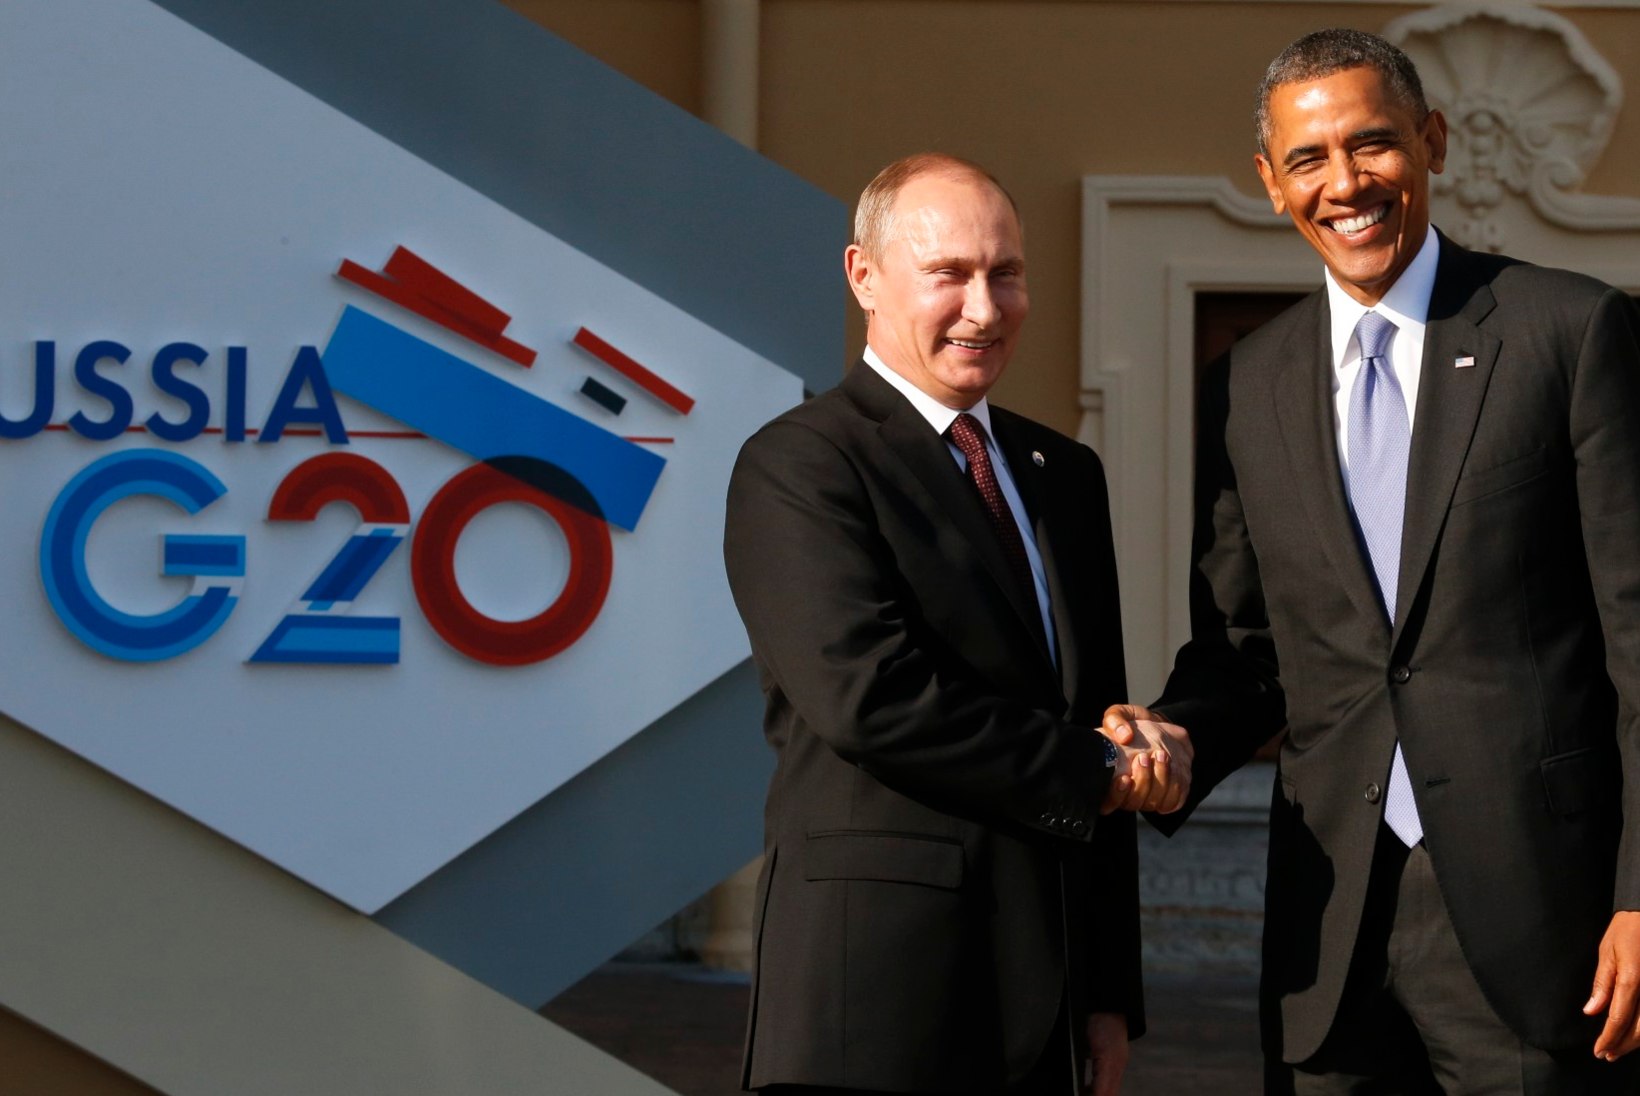 Putinile pakuti kihlvedu Obamaga. Venemaa president keeldus